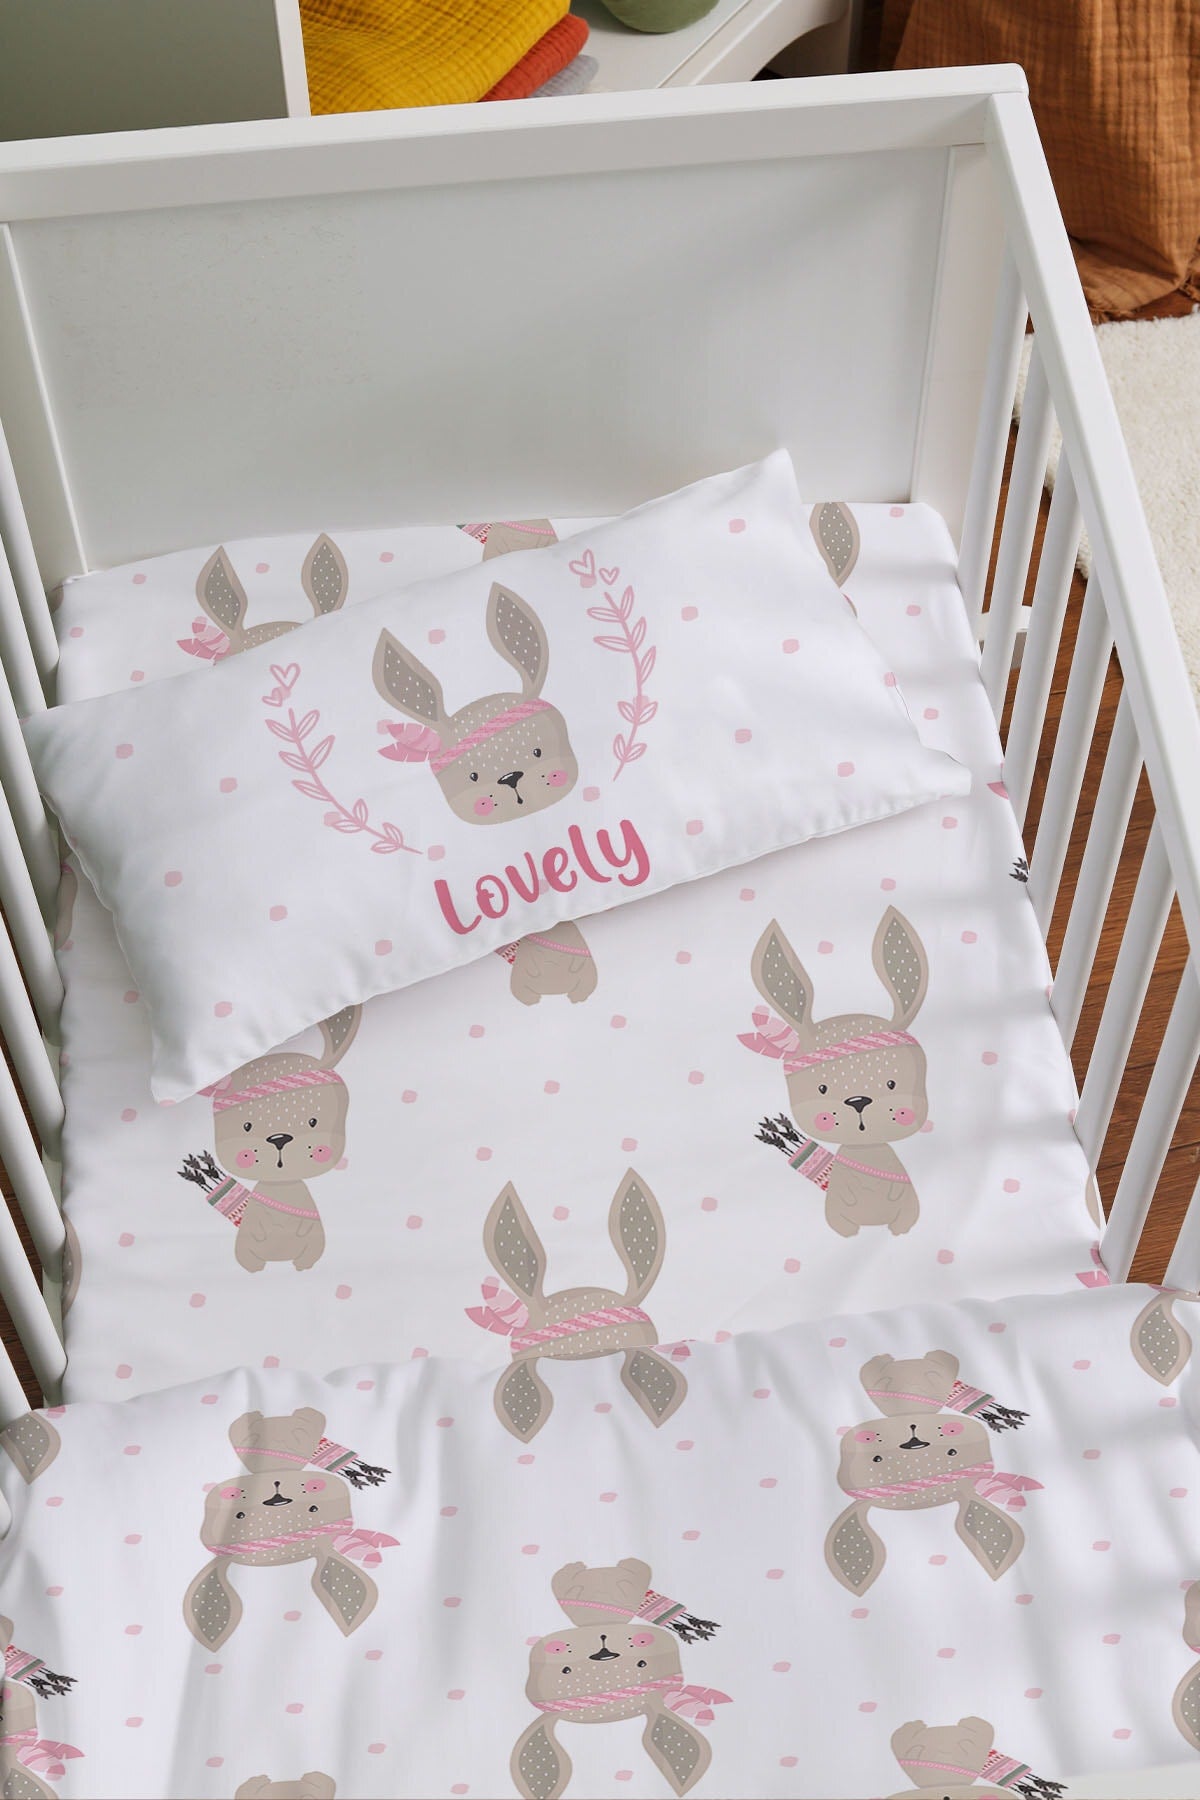 Mother's Side Crib Sleeping Duvet Cover Set - For Baby